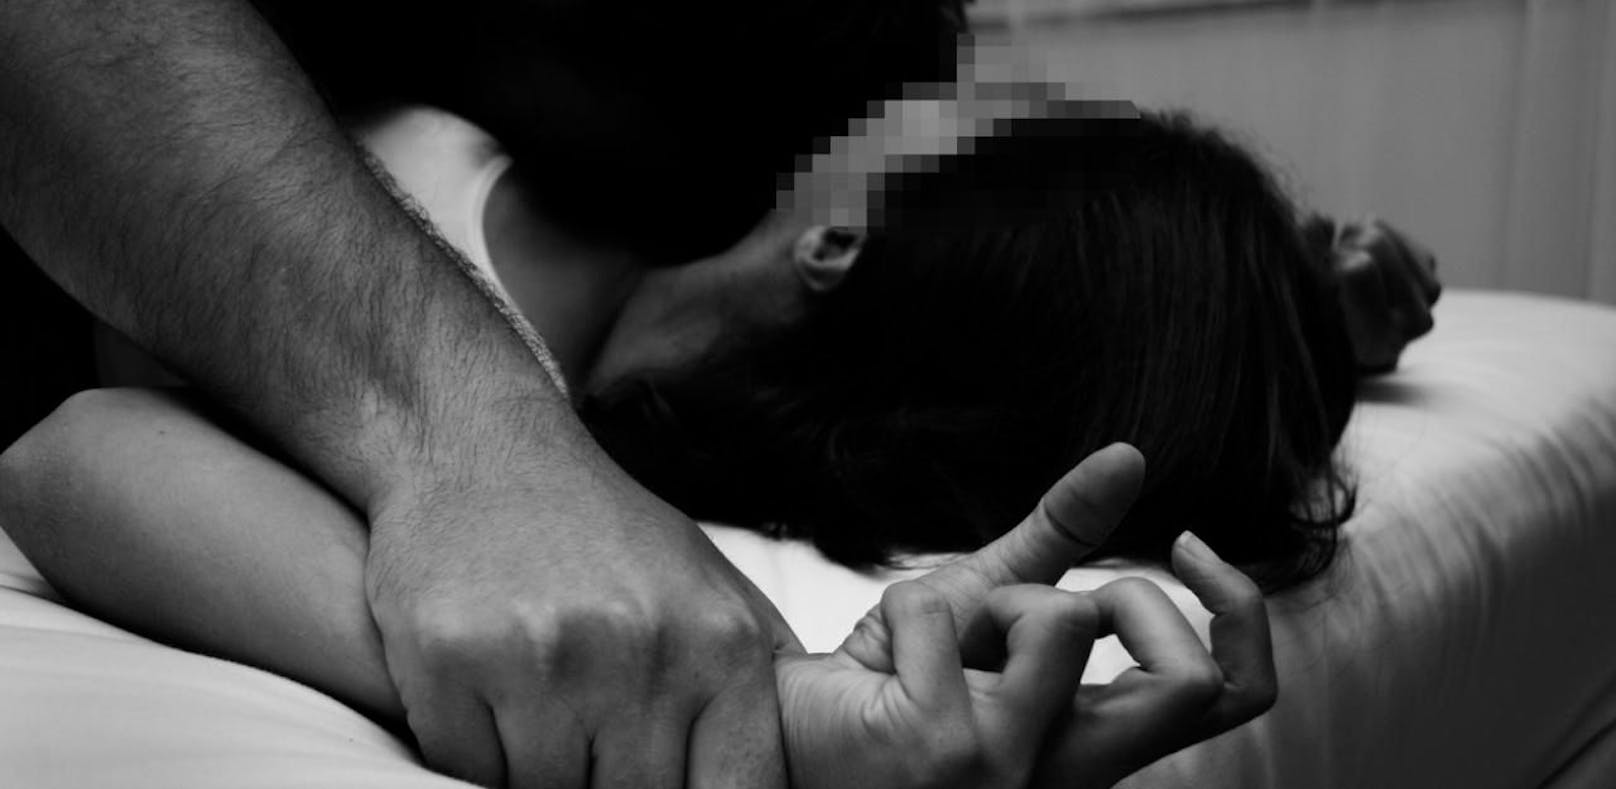 Der Mann missbrauchte die 16-Jährige sexuell